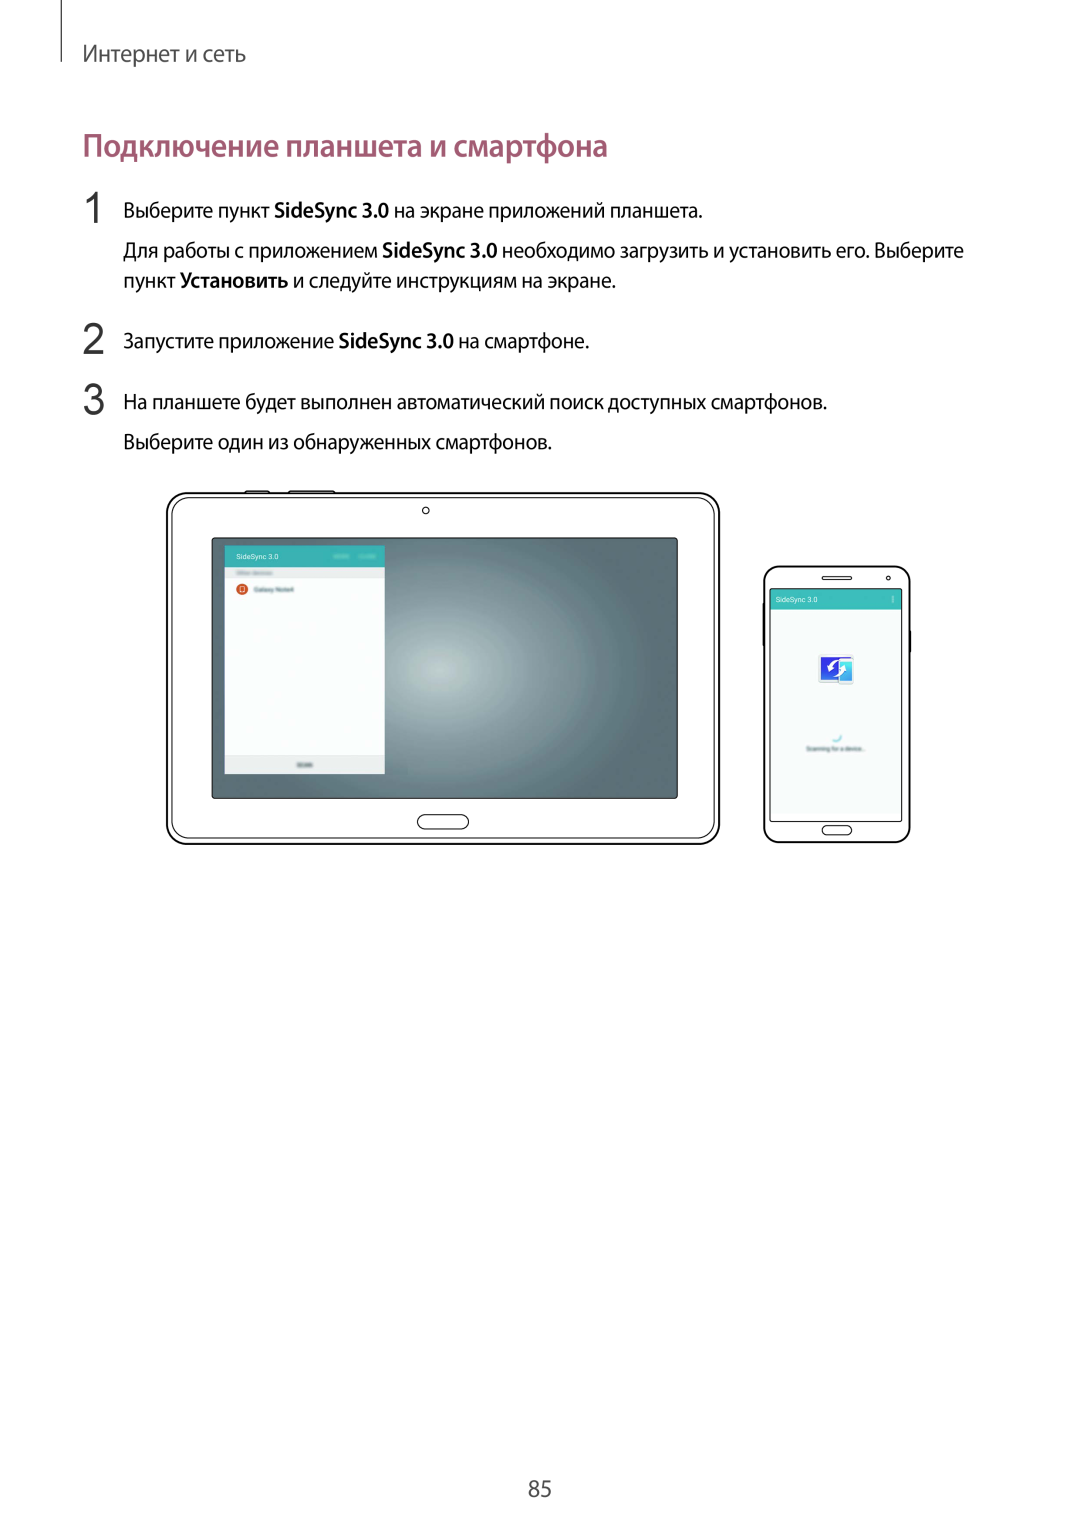 Samsung SM-P9000ZWASEB Подключение планшета и смартфона, Интернет и сеть, Запустите приложение SideSync 3.0 на смартфоне 